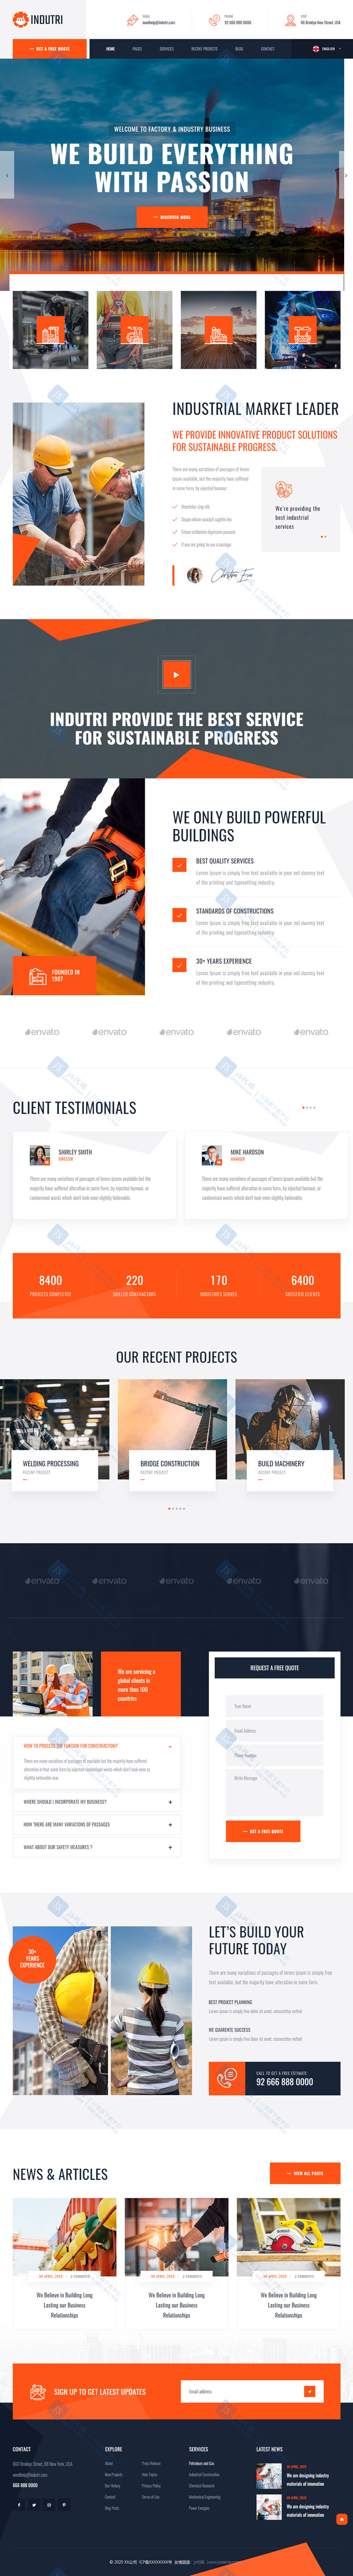 橙色大型工业设备器械设备制造业公司企业HTML5网站模板